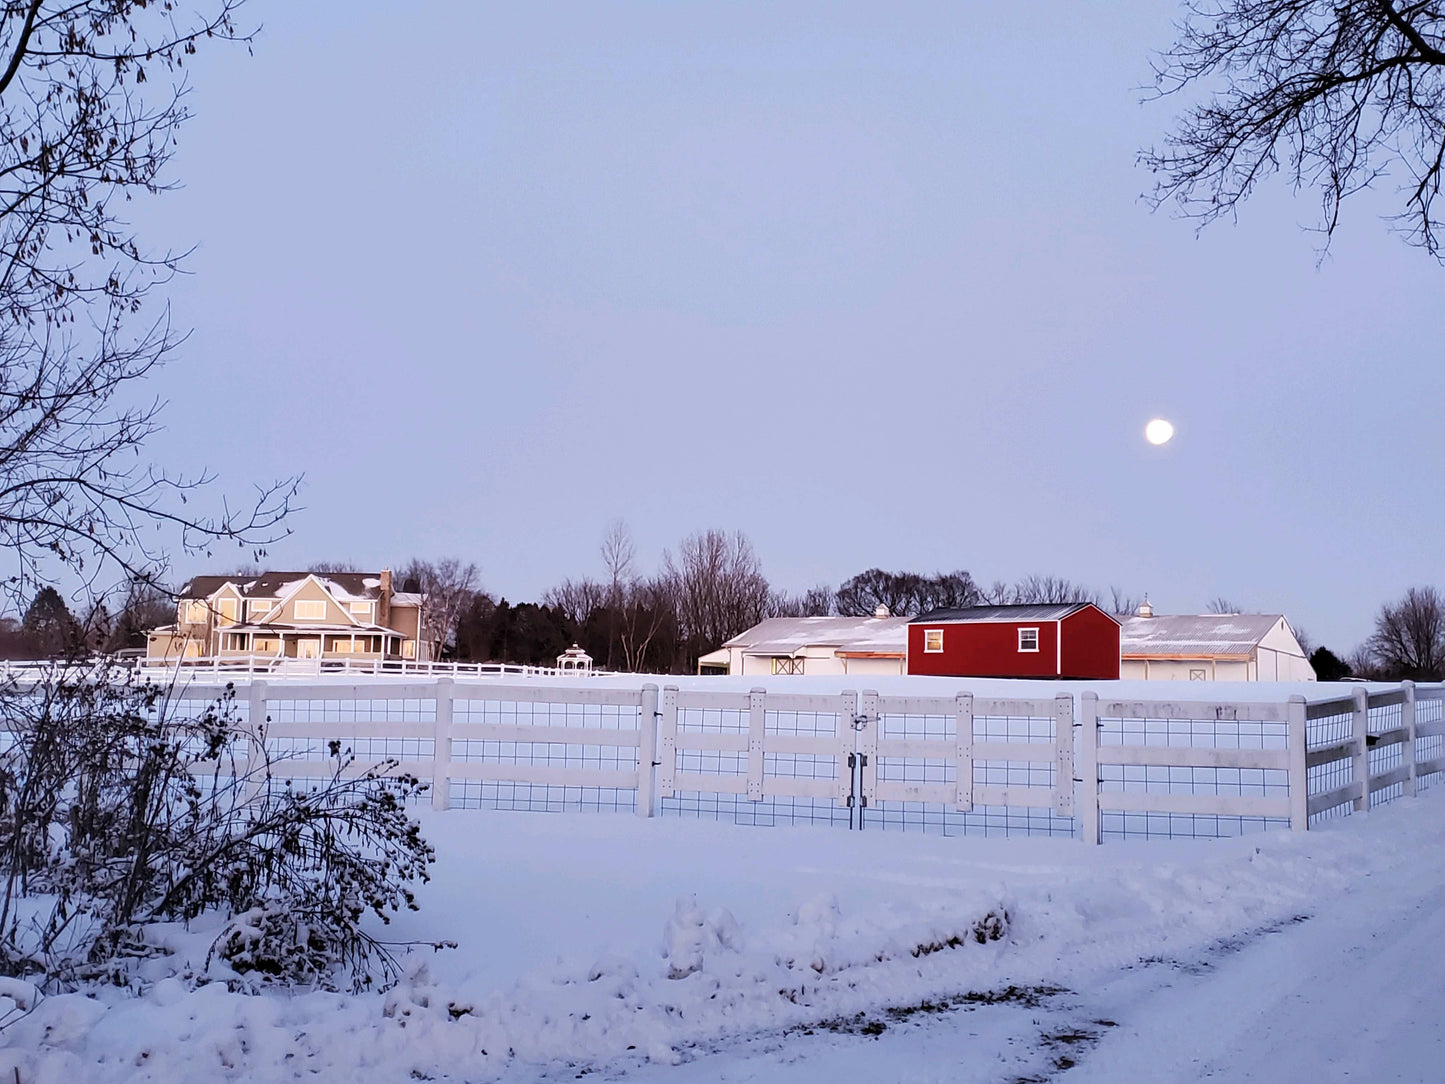 4 x 6 matted photo - Winter Farm Scene